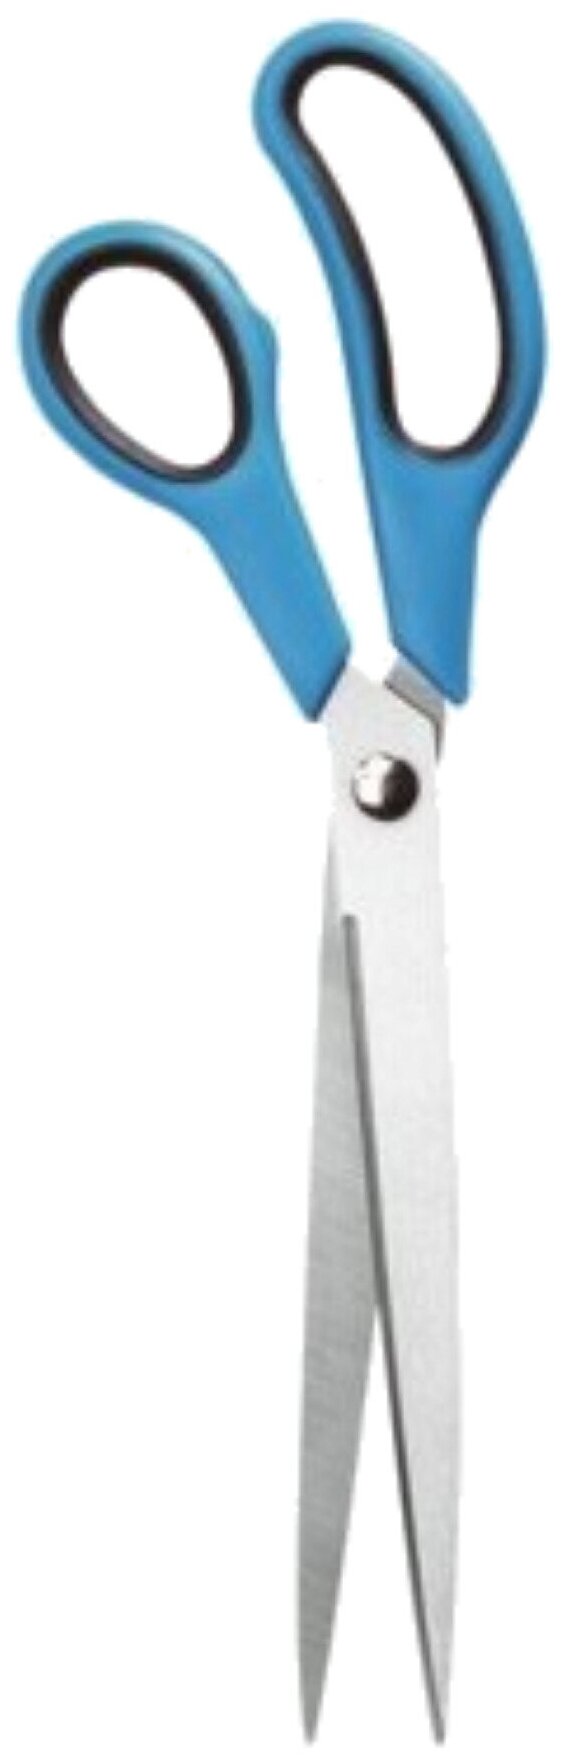 212828 Storch PROFI Ножницы портновские и раскройные Ножницы обойные 28см двухкомпонентная пластиковая ручка.